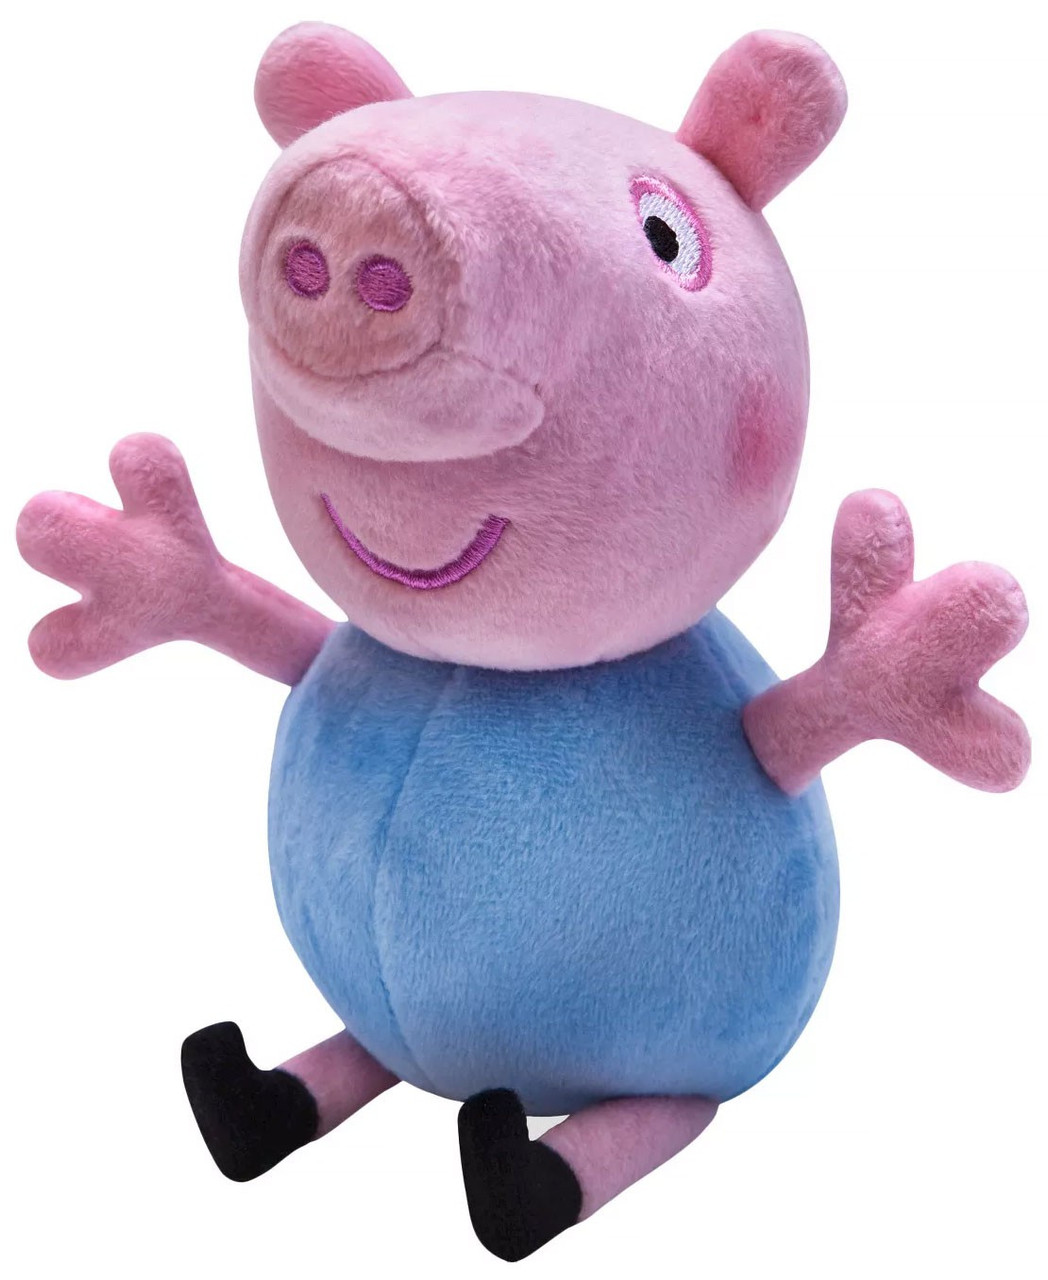 peppa pig george stuffed toy